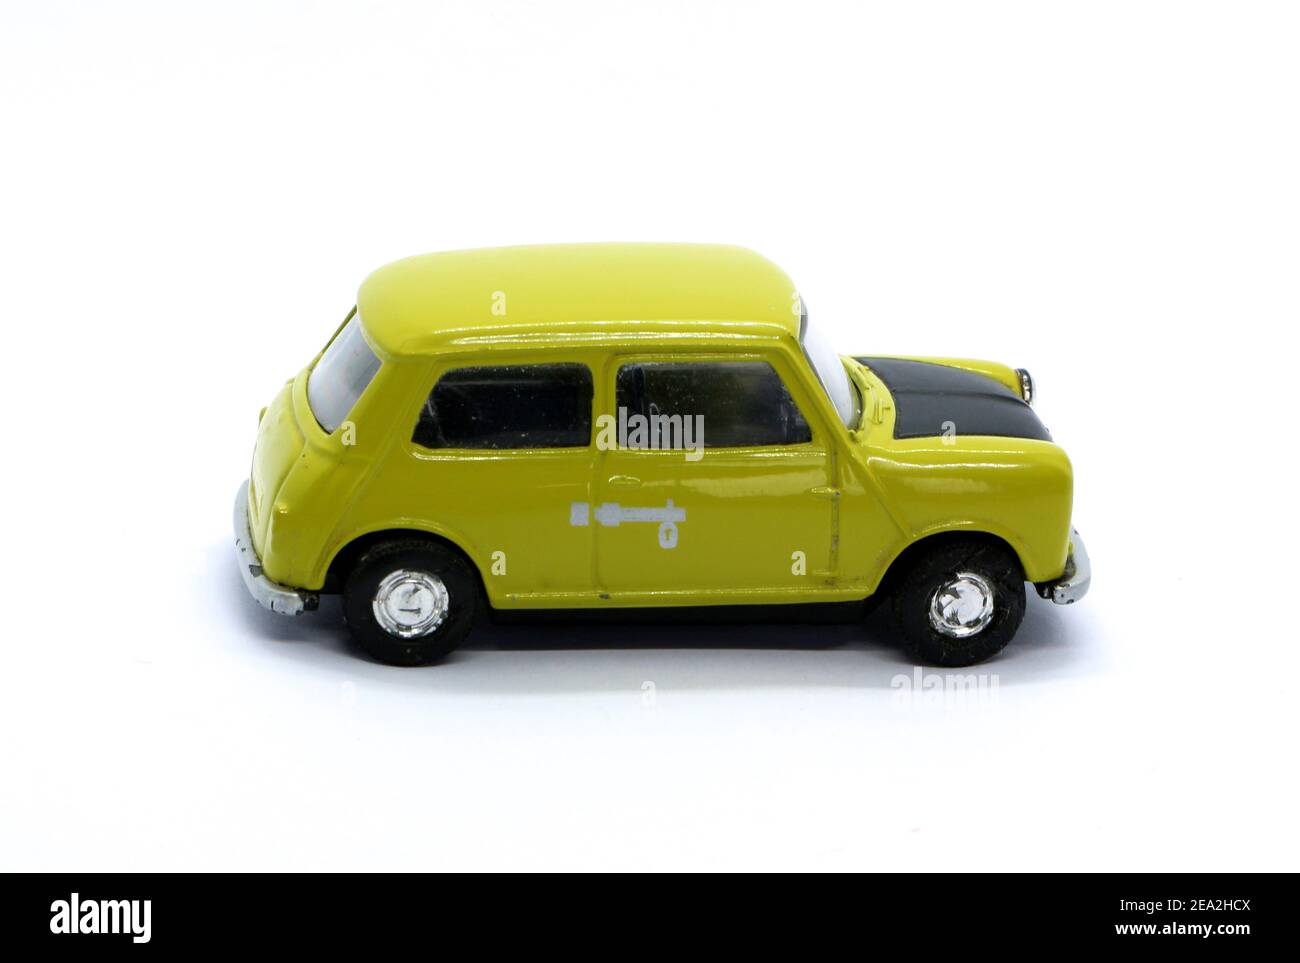 Photo d'un modèle Corgi moulé de la mini voiture verte et noire utilisée dans la série et les films de M. Bean tv Banque D'Images